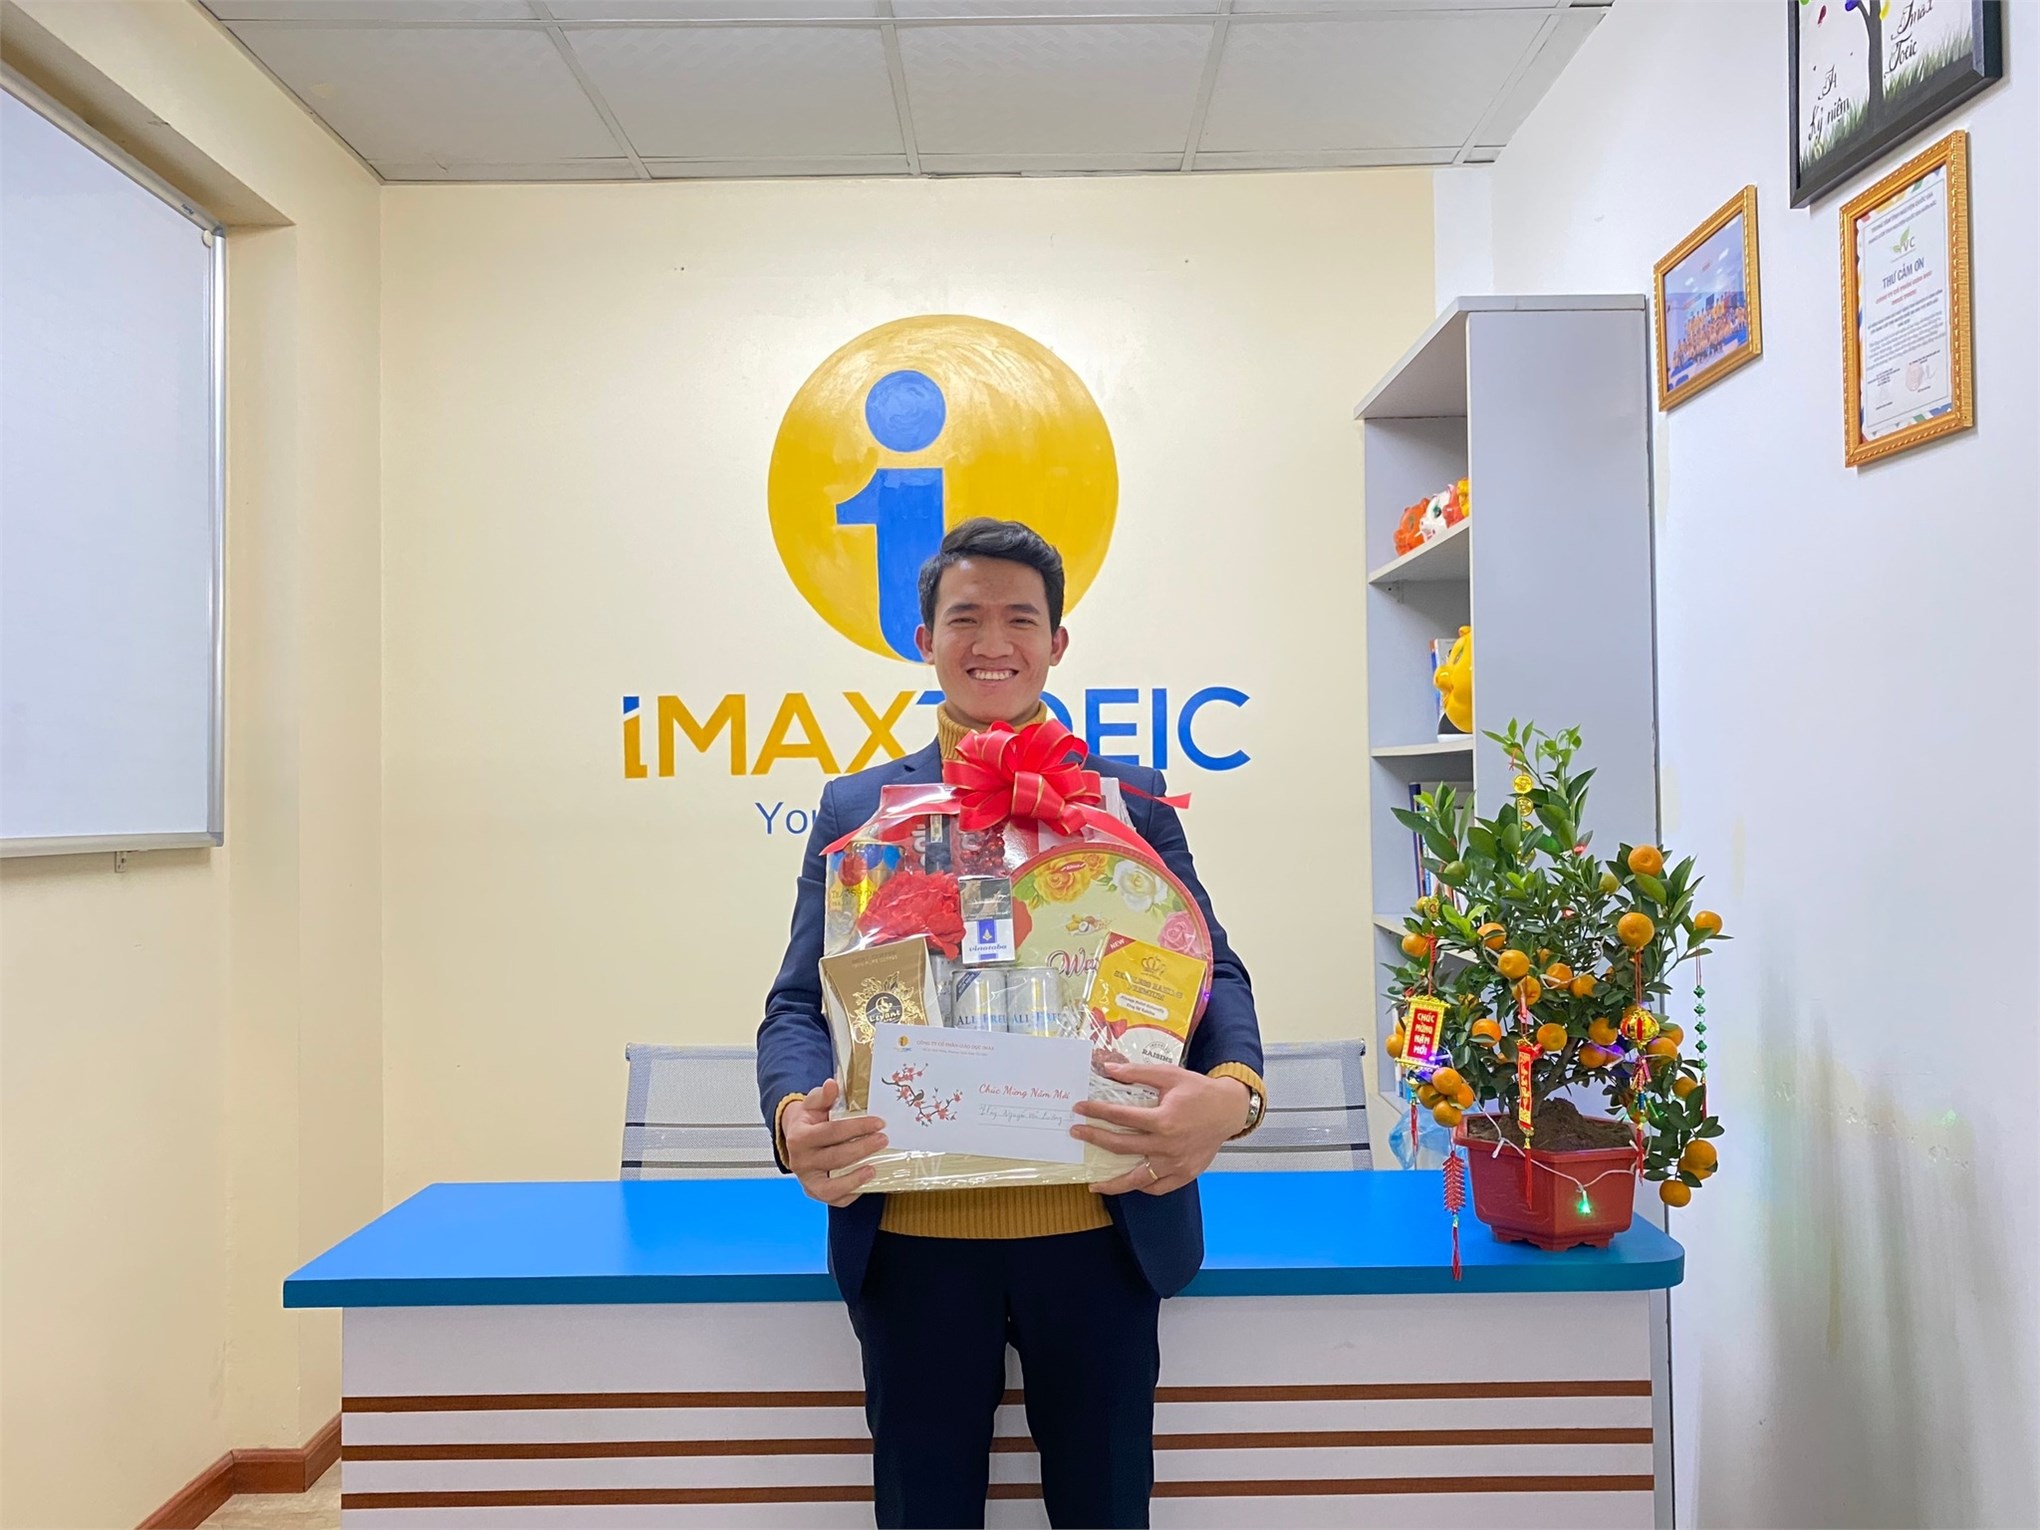 Cựu sinh viên Dương Văn Hiền leader trung tâm Imax toeix